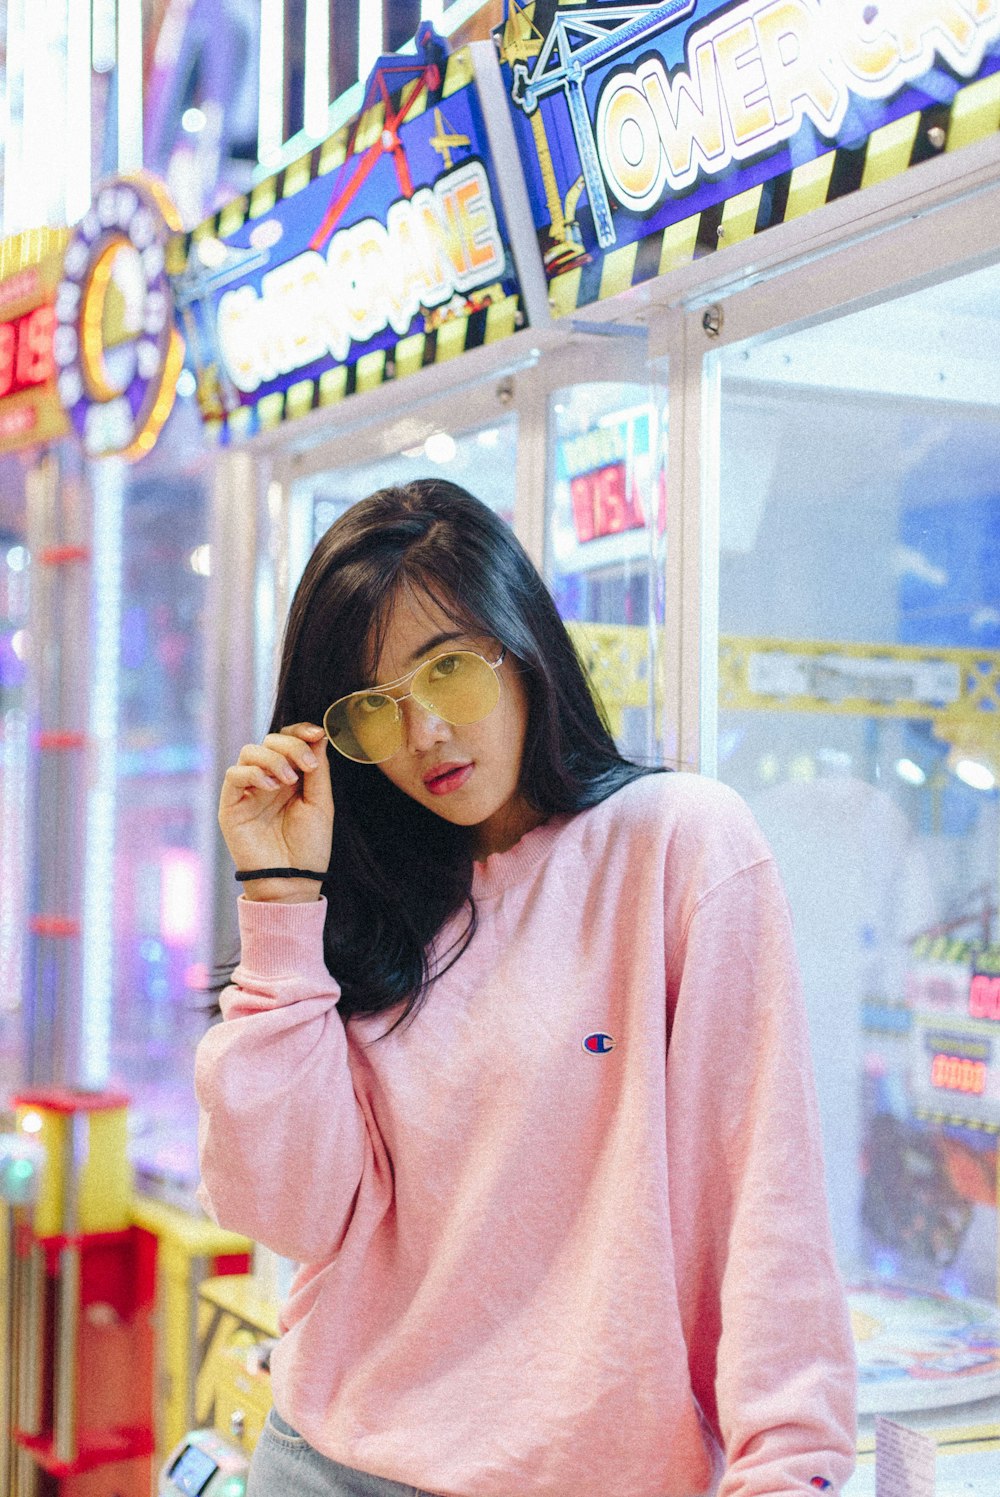 Frau im rosa Champion-Sweatshirt mit ihrer Sonnenbrille, die sich an einen Spielautomaten lehnt